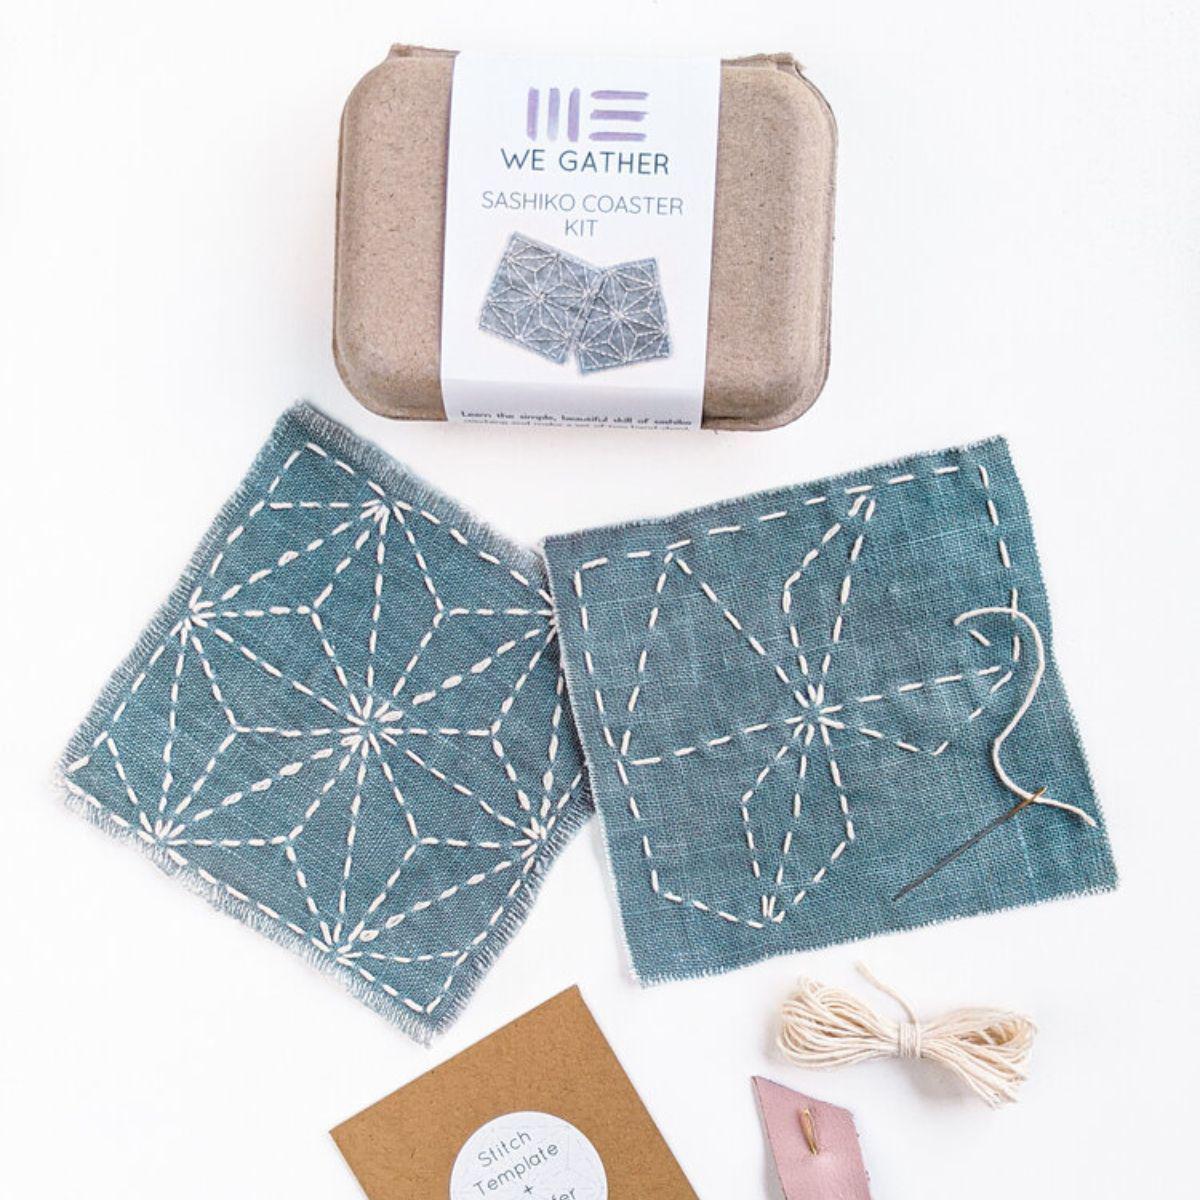 We Gather-Sashiko Coaster Kit-embroidery kit-gather here online